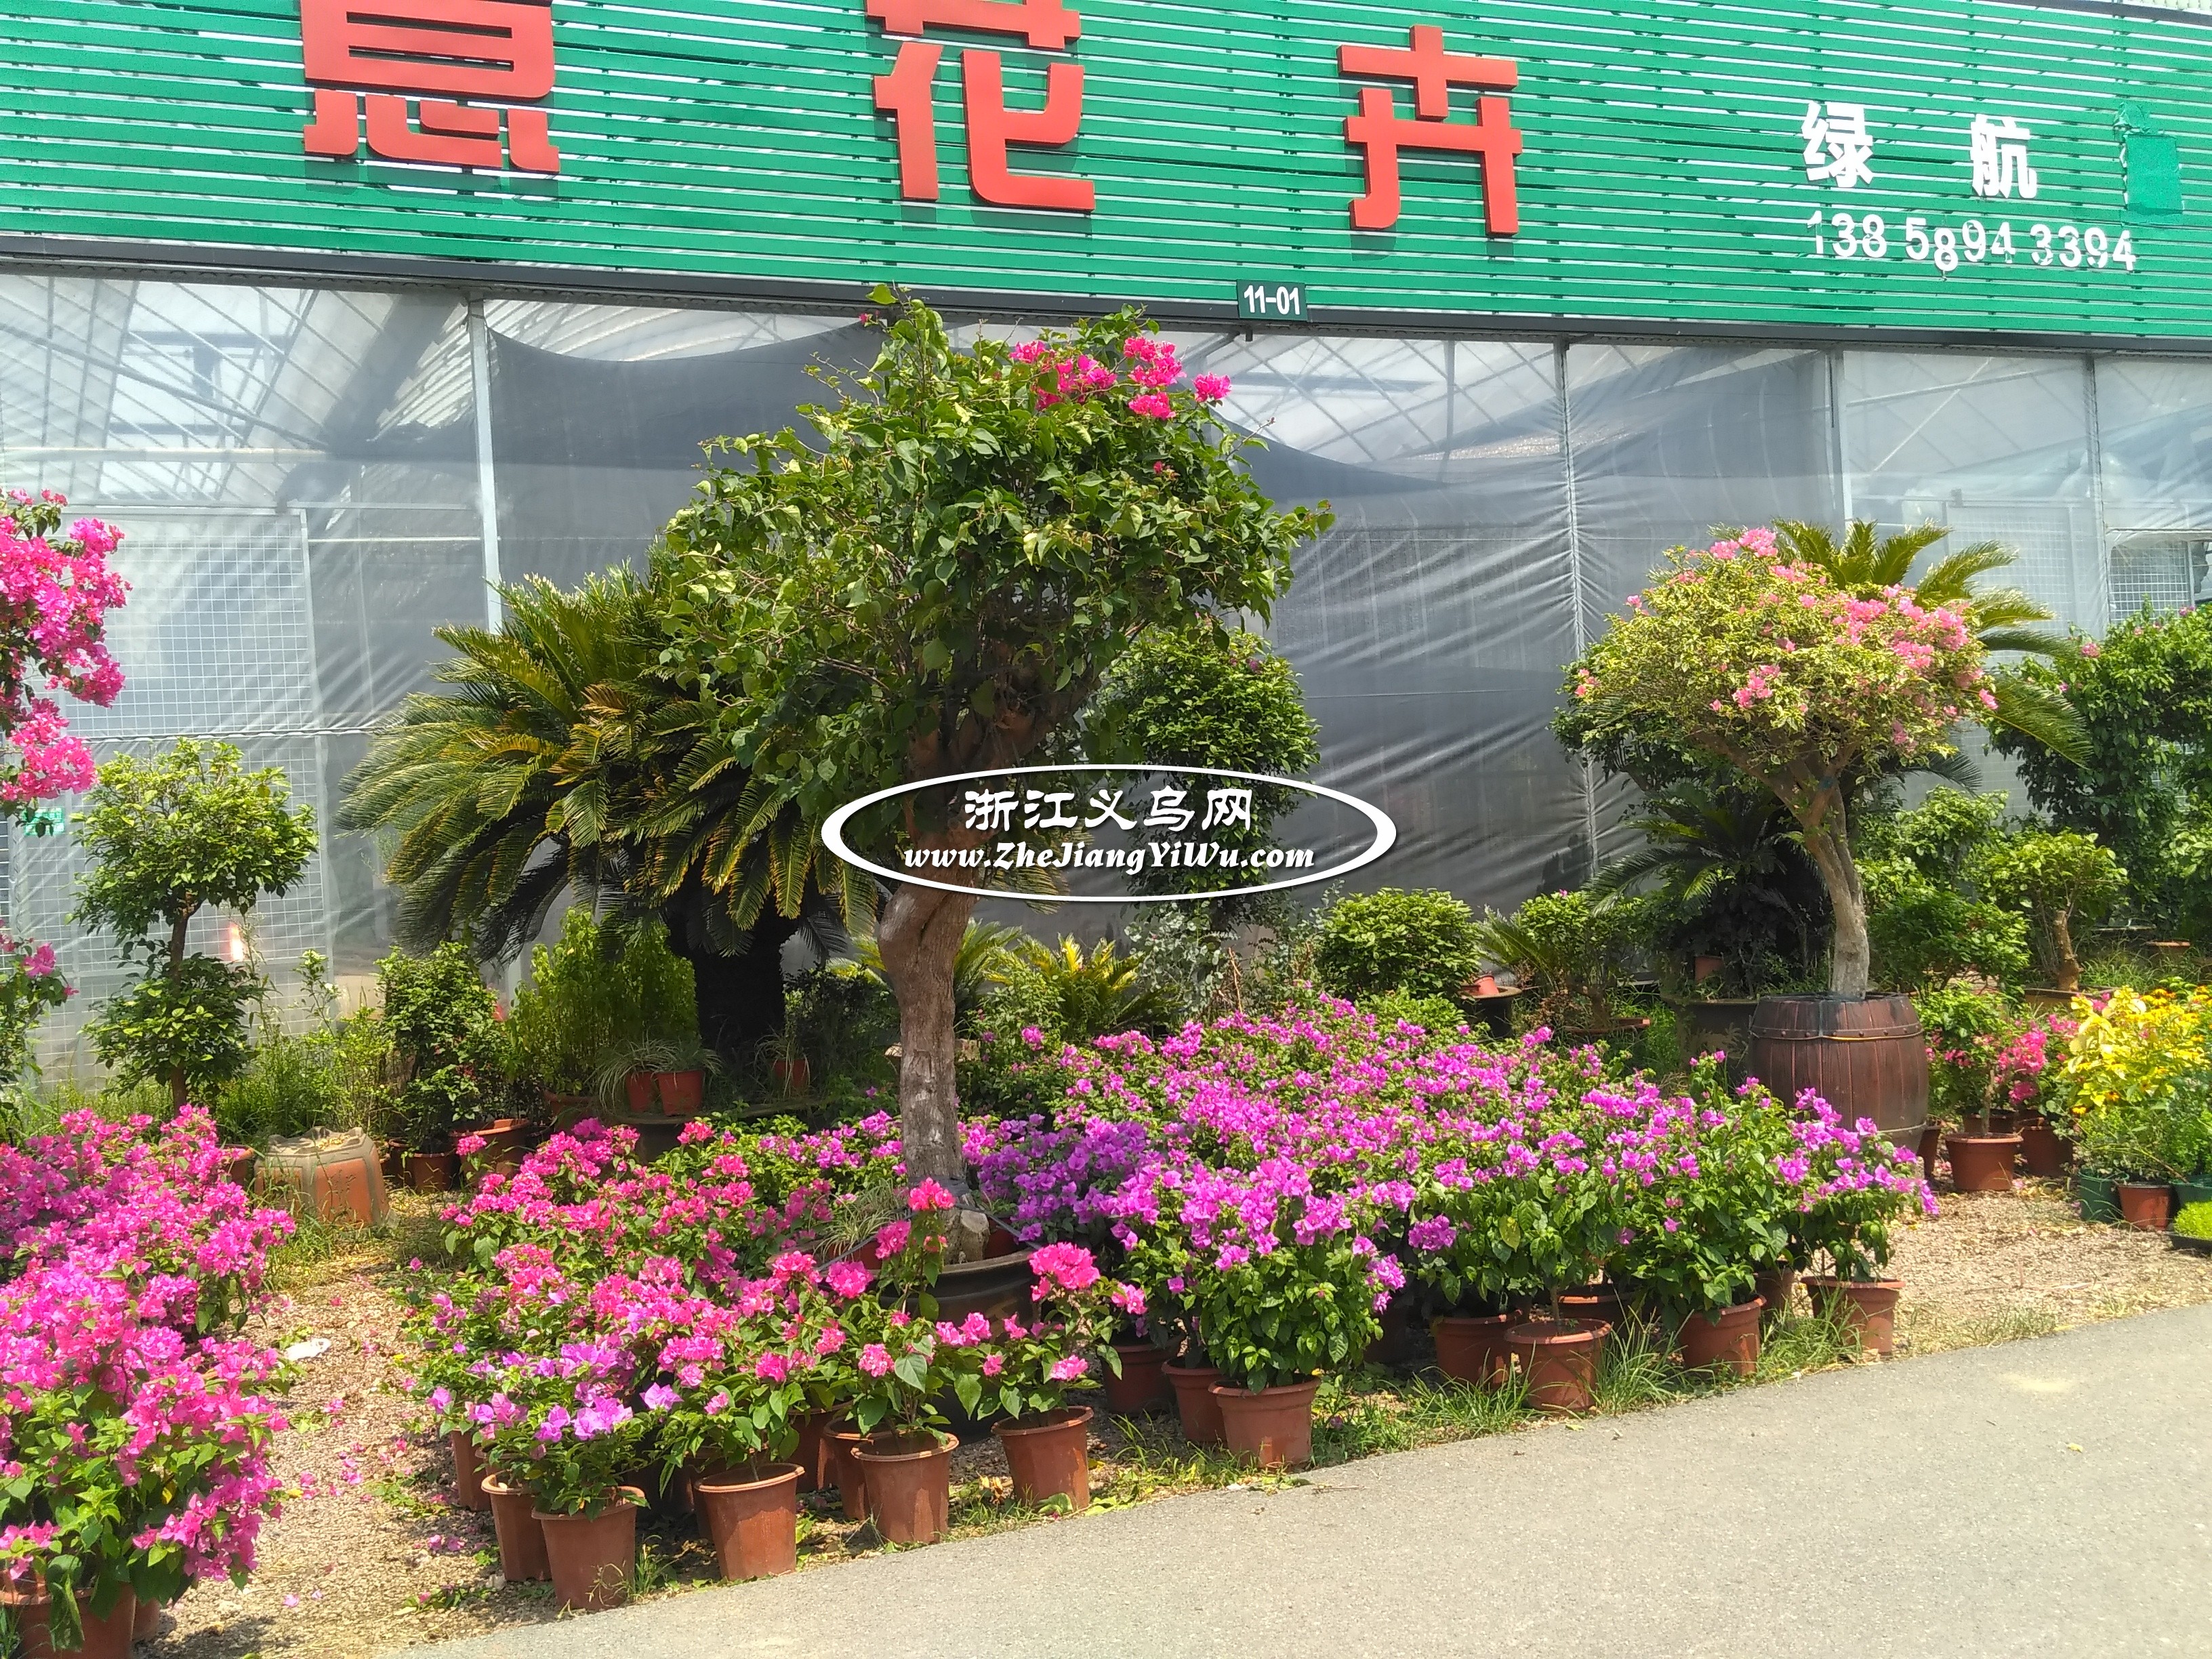 金华市澧浦苗木城是浙中最大的苗木花卉批发市场